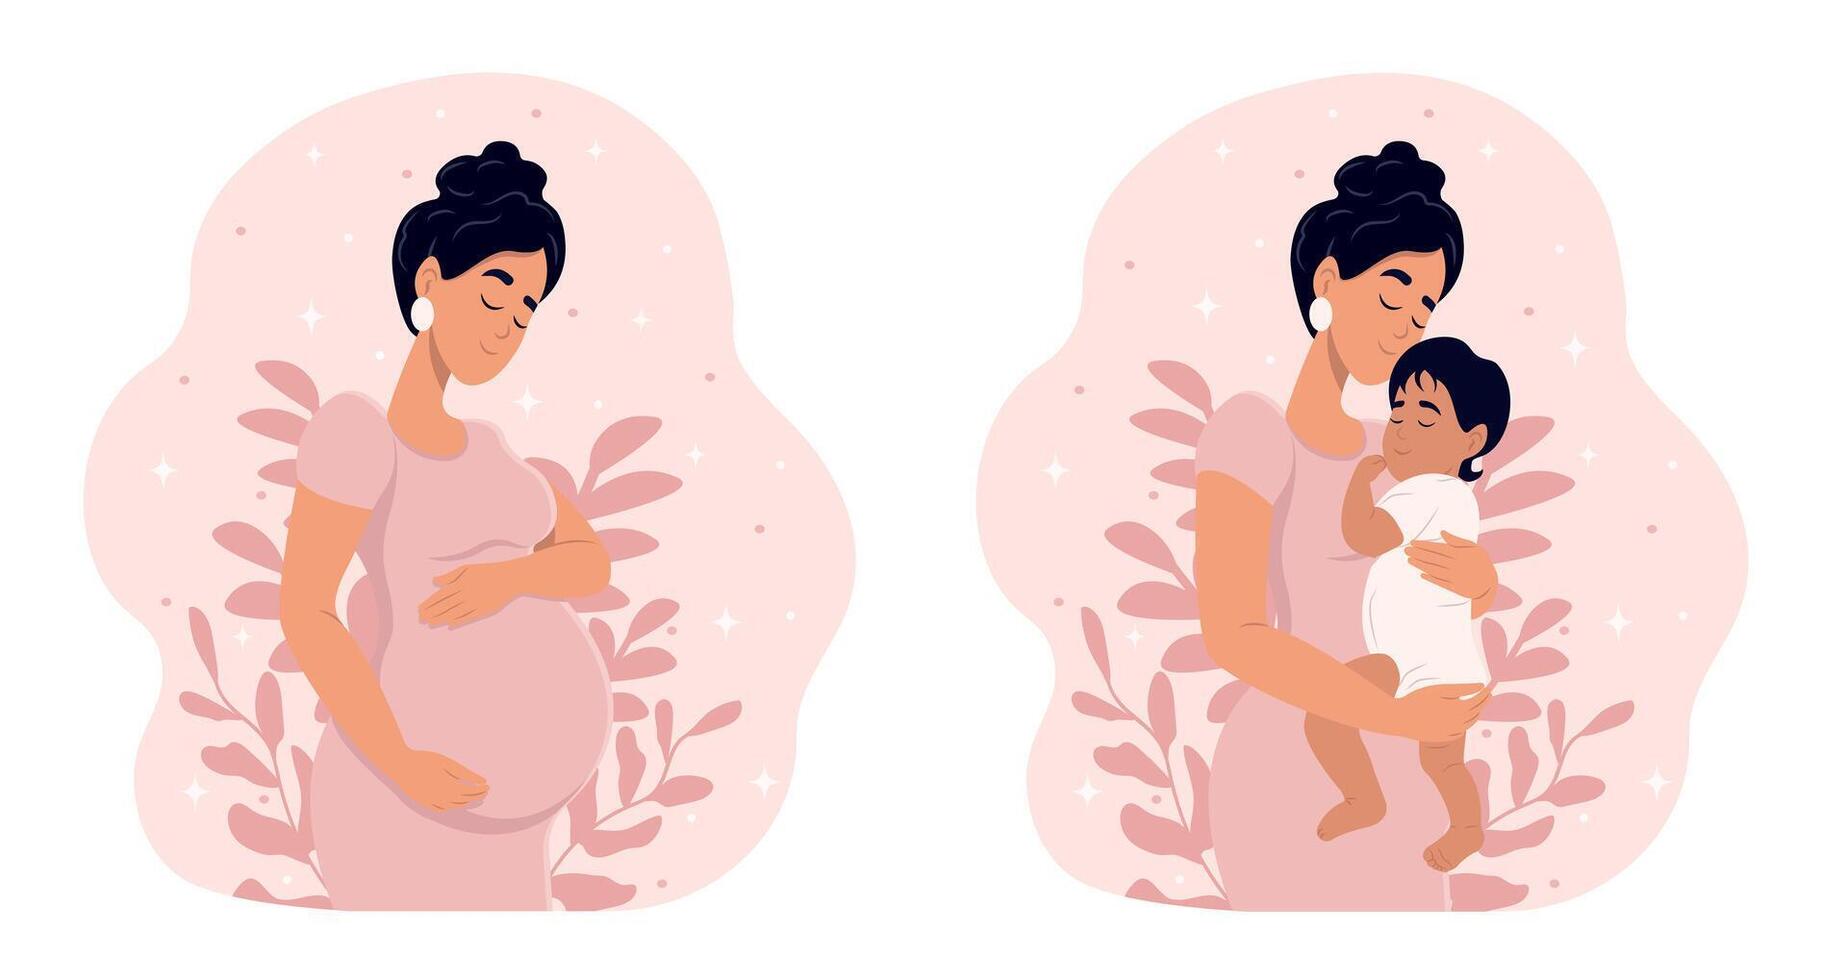 grossesse et maternité. plat illustration. vecteur